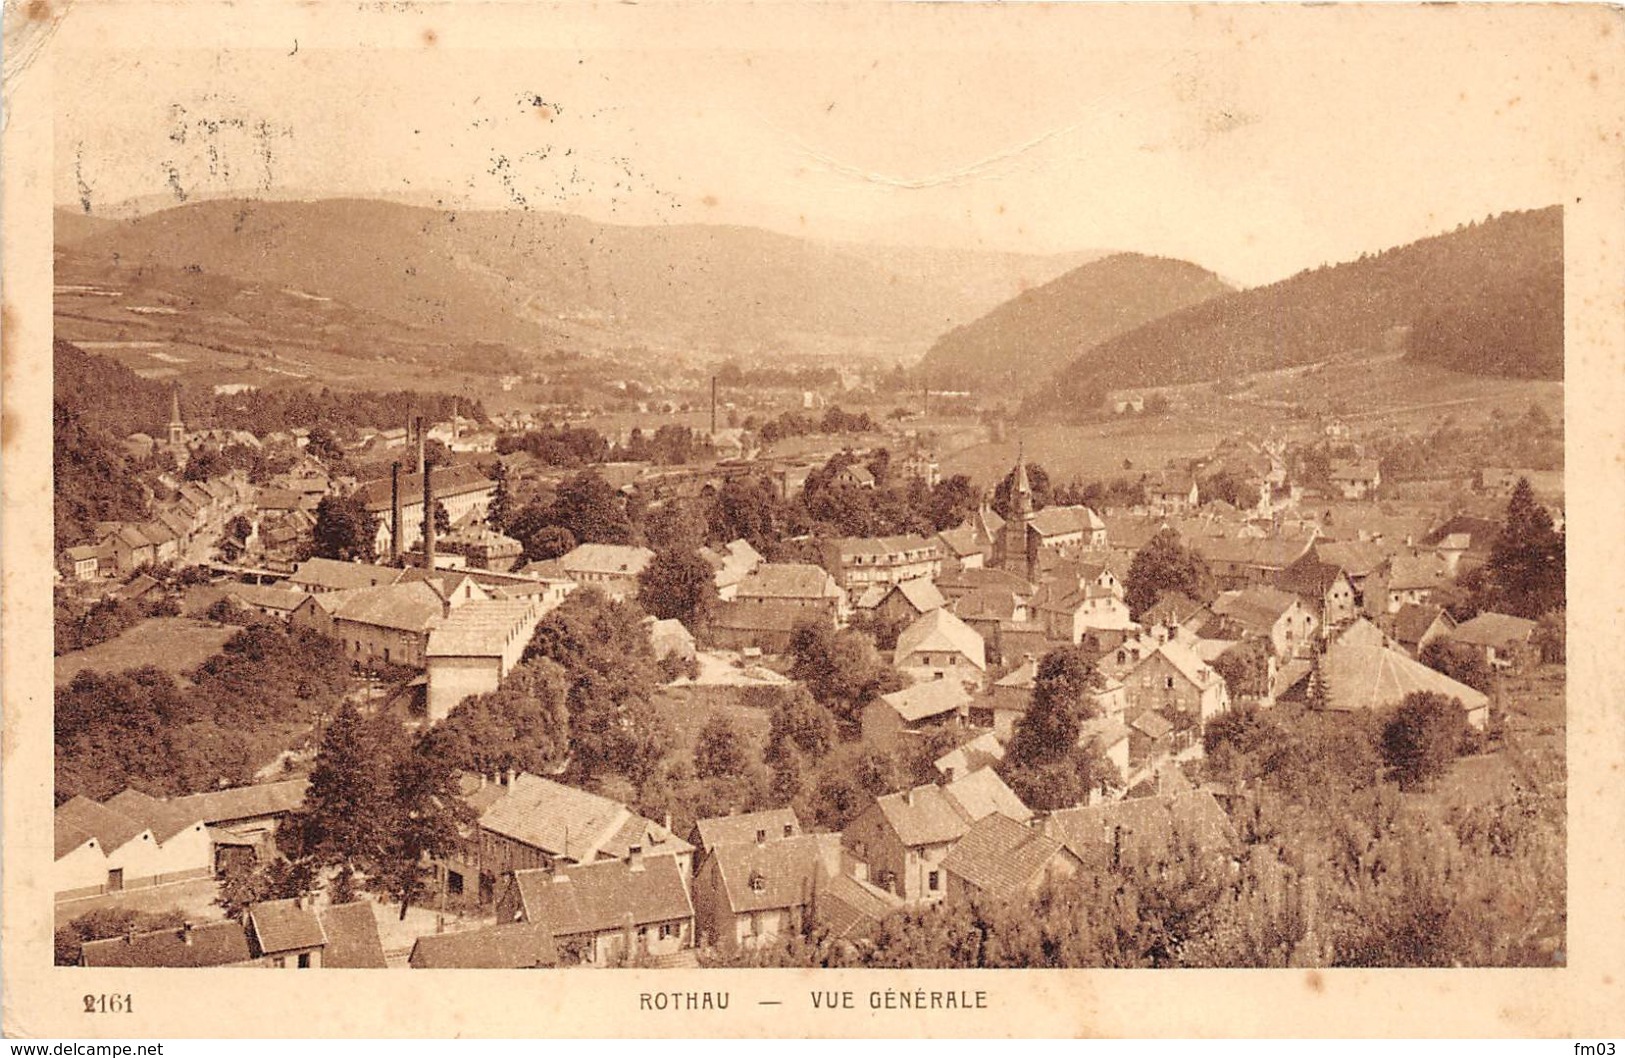 Rothau Canton Schirmeck Braun 2161 - Rothau